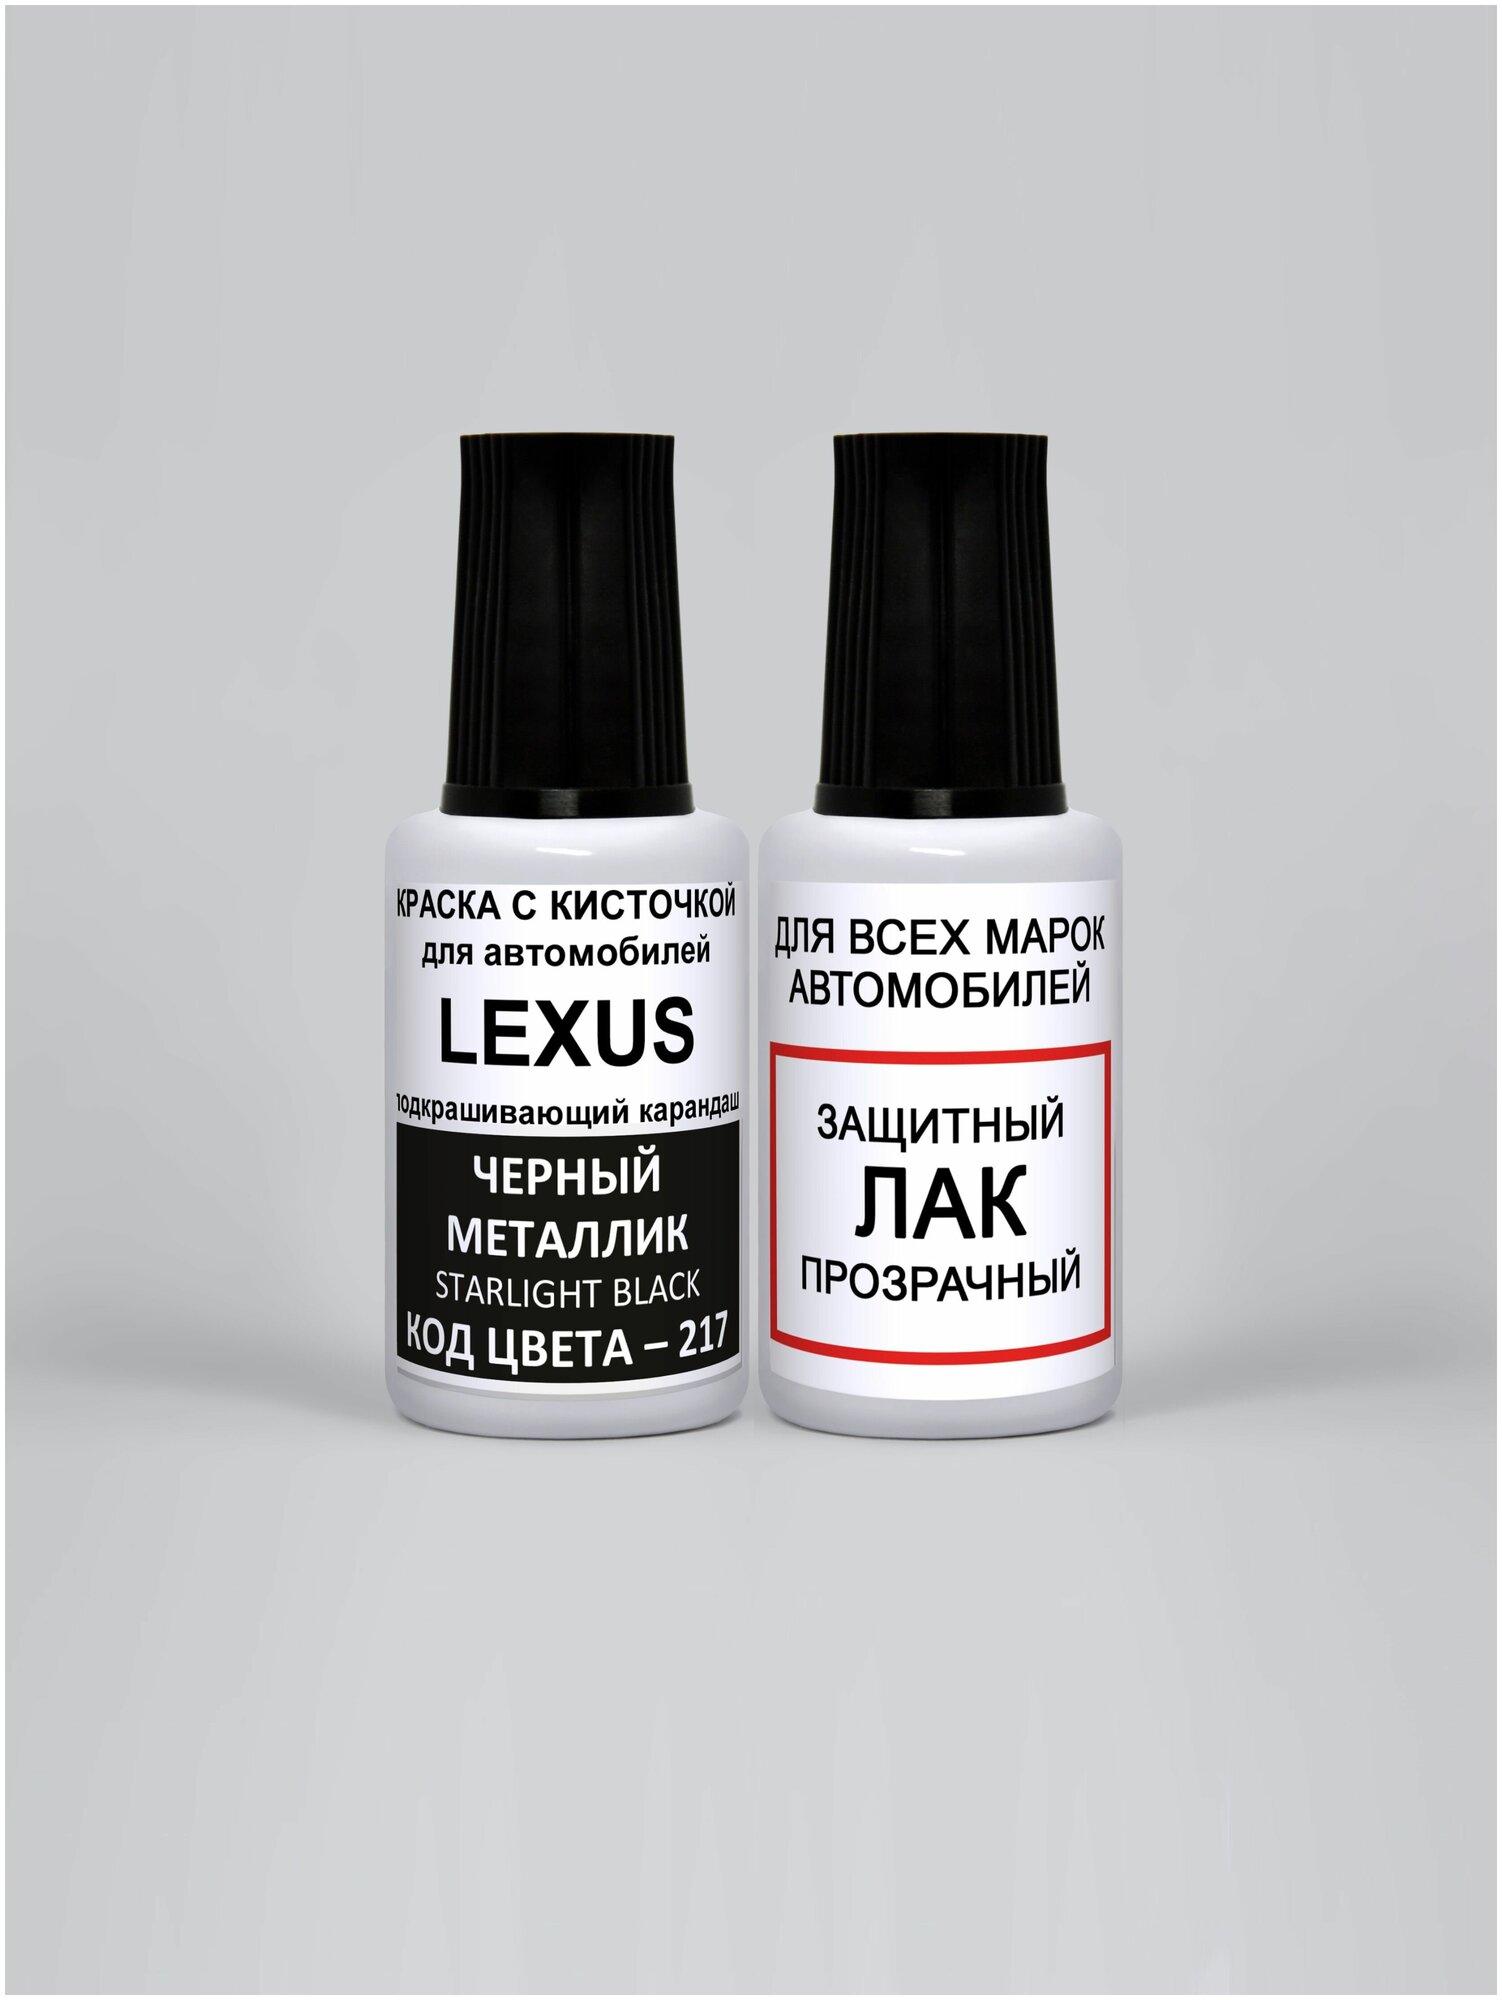 Набор для подкраски 217 для Lexus Черный металлик Starlight Black краска+лак 2 предмета